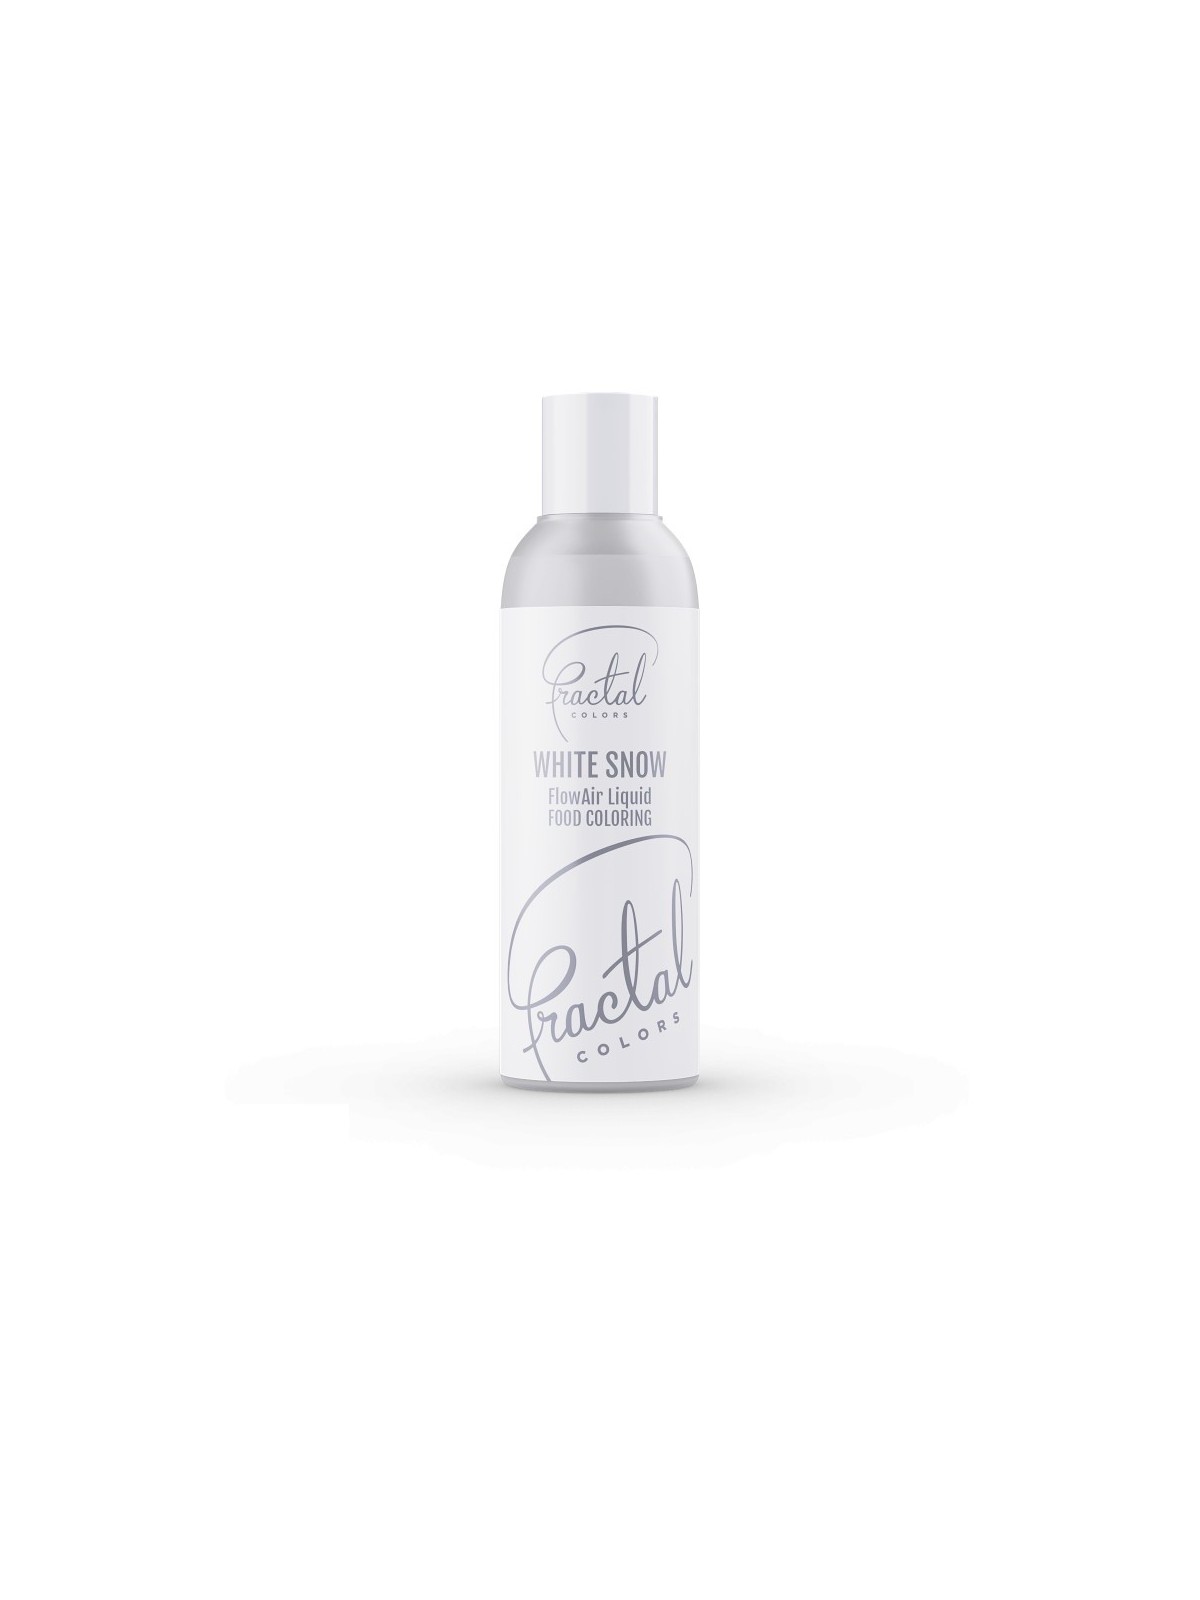 Dekorativ Airbrush Lebensmittelfarbe Fractal - White Snow (100 ml)